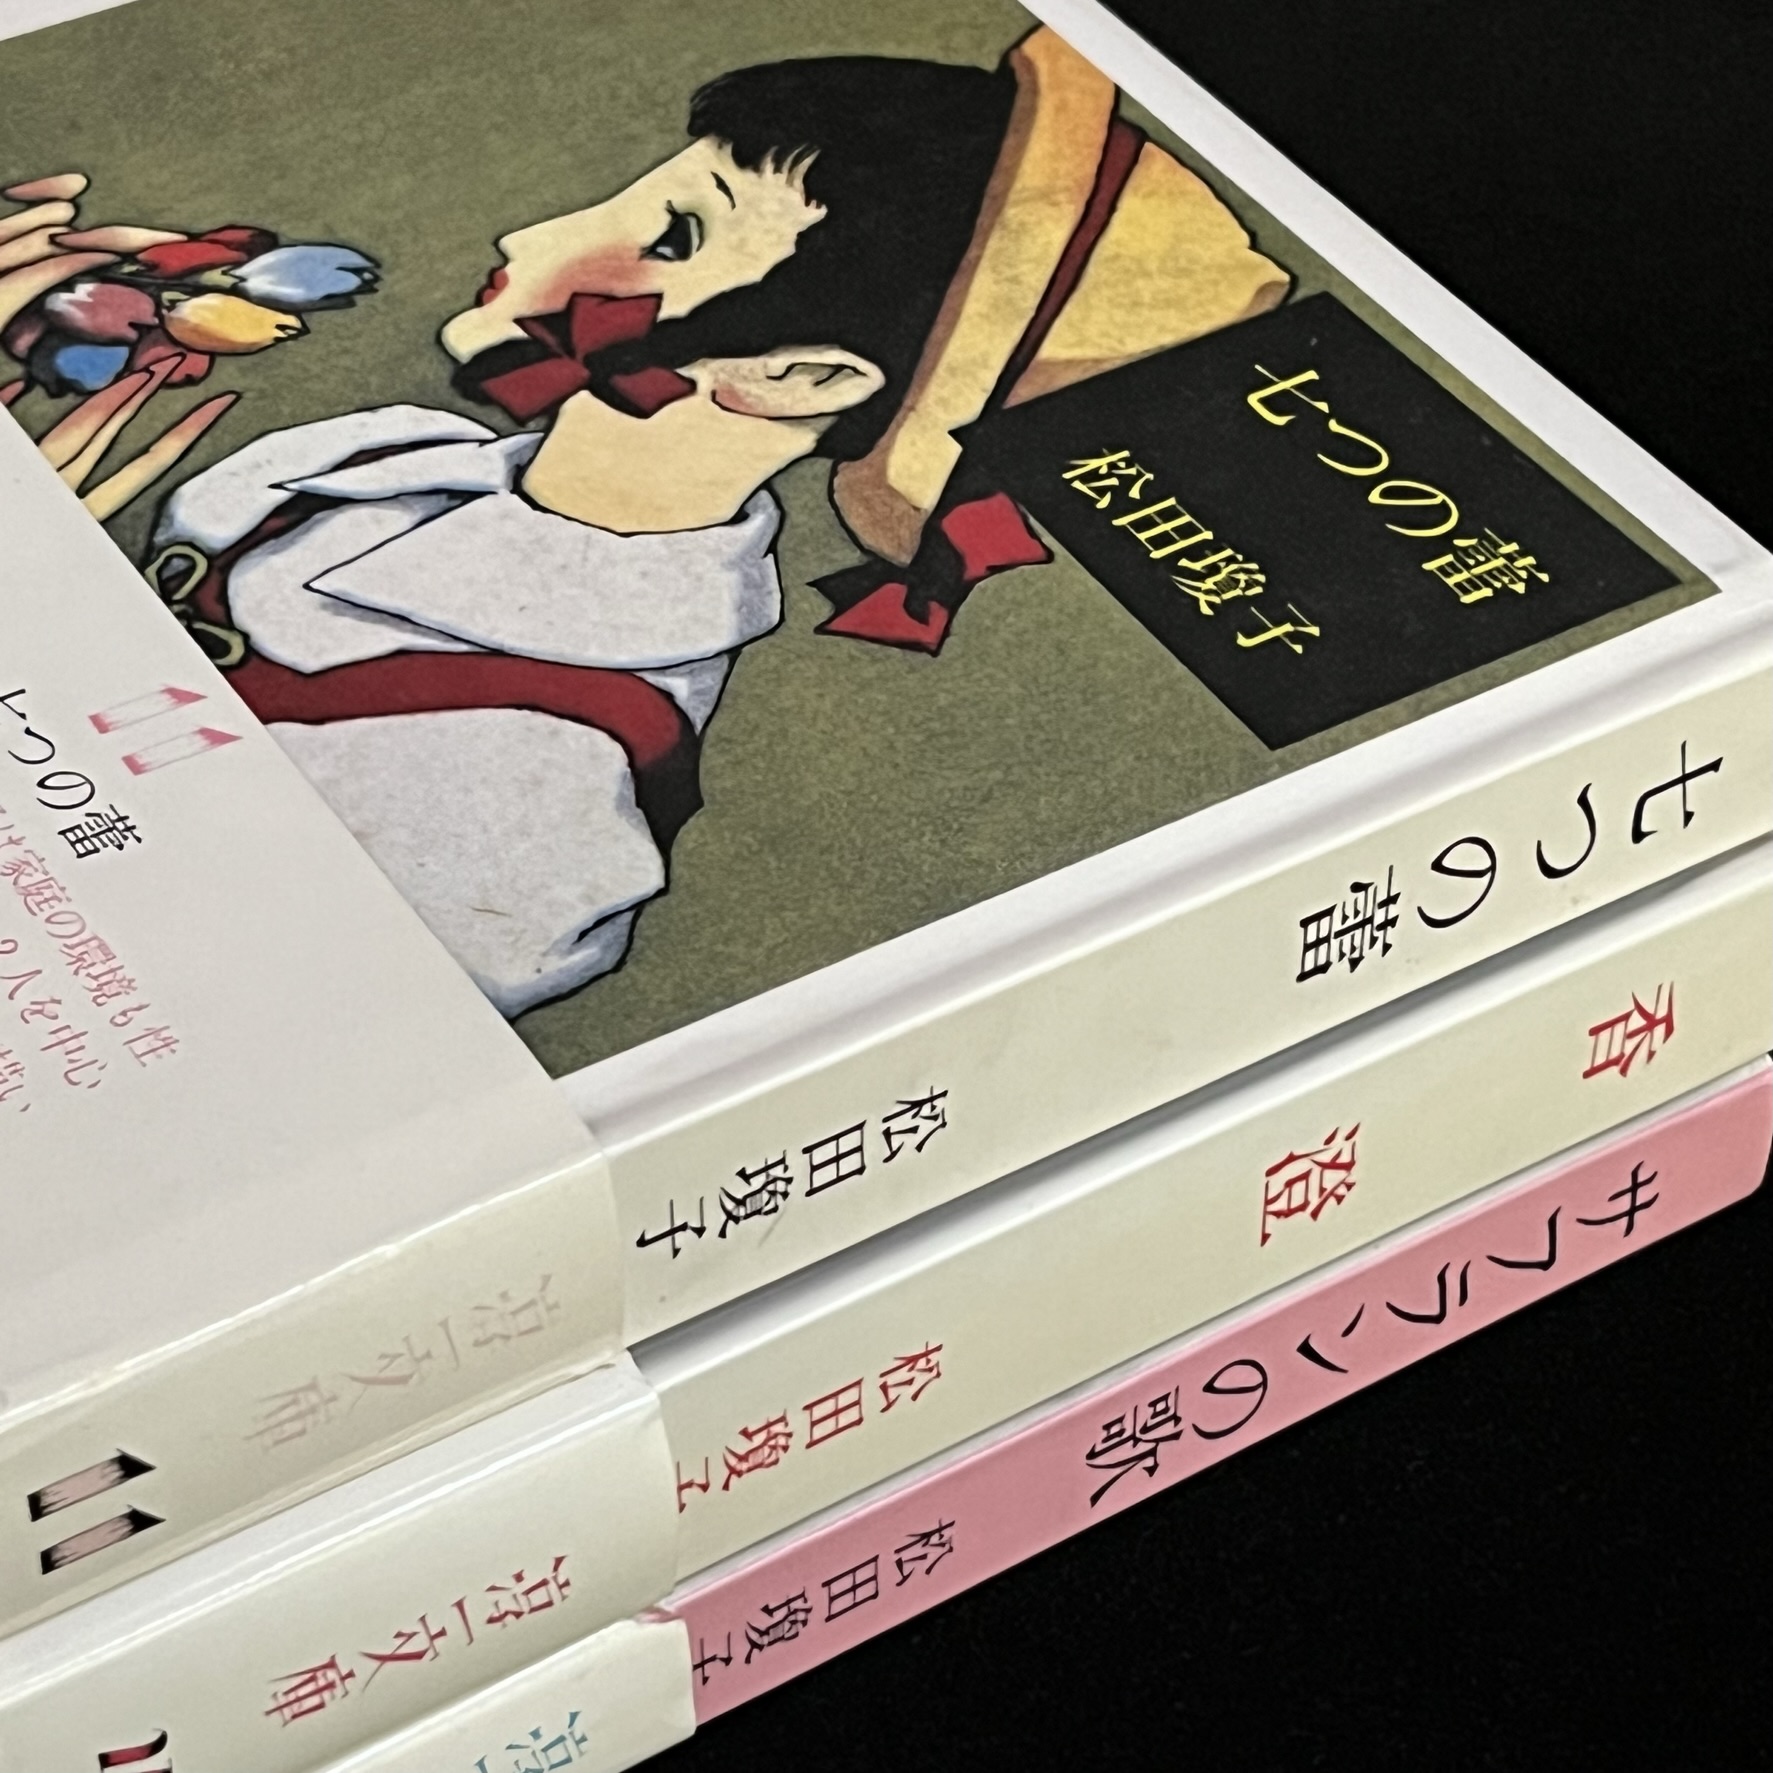 松田瓊子さんの３冊の本の写真です。『七つの蕾』『香澄』『サフランの歌』の本です。装画は中原淳一さん。『七つの蕾』の表紙には、帽子をかぶり、三つ編みの髪に赤いリボンをつけた乙女が描かれており、手には色とりどりのお花を７，８輪持っています。